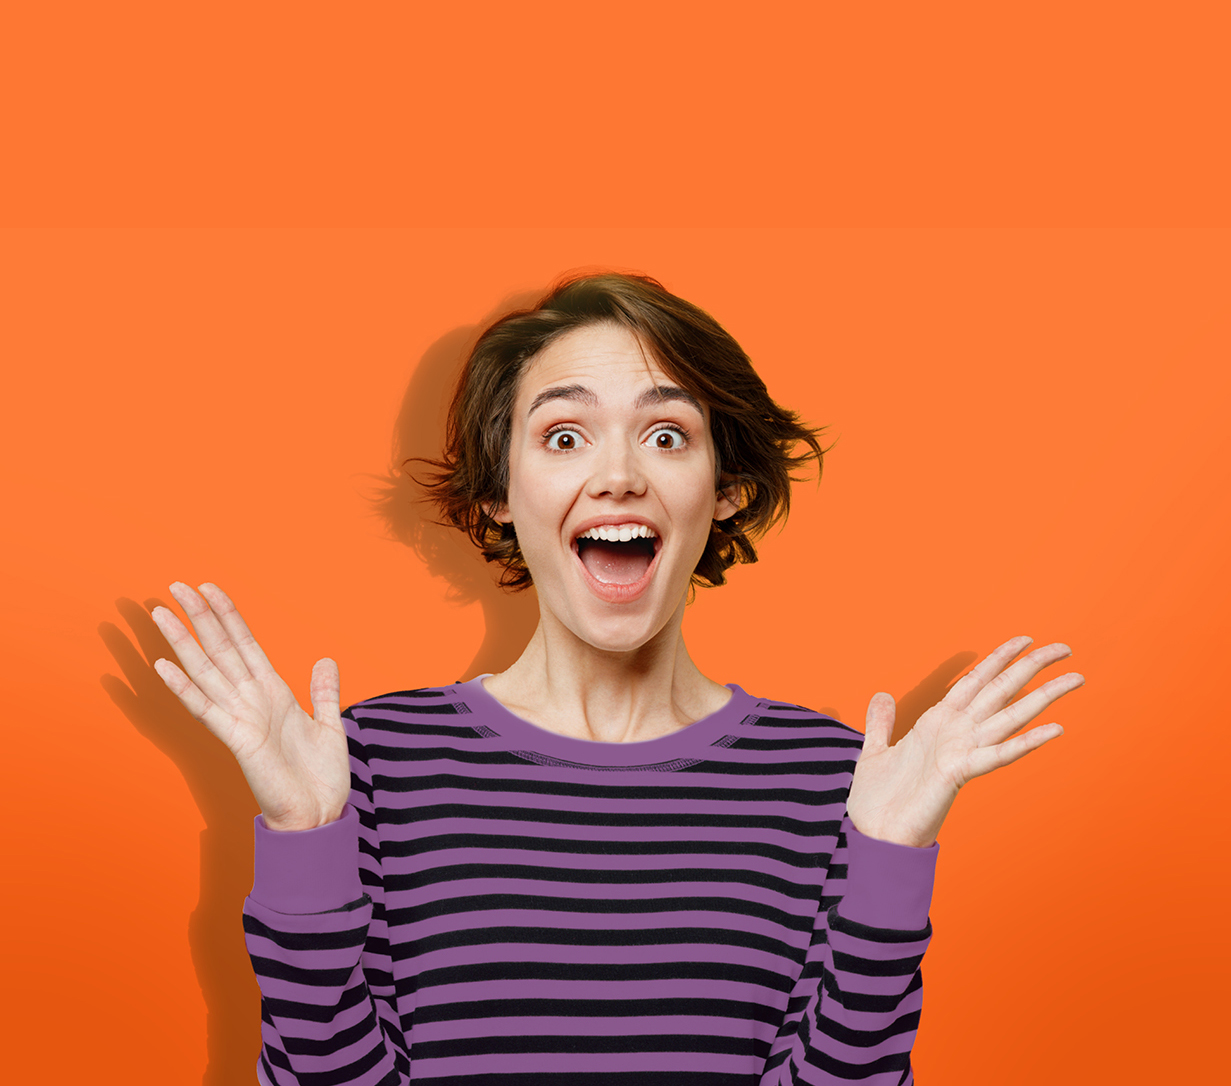 Die Abbildung zeigt eine strahlende, begeisterte junge Frau, die in einem lila/schwarz gestreiften Sweatshirt vor orangenem Hintergrund steht und beide Händen nach oben streckt